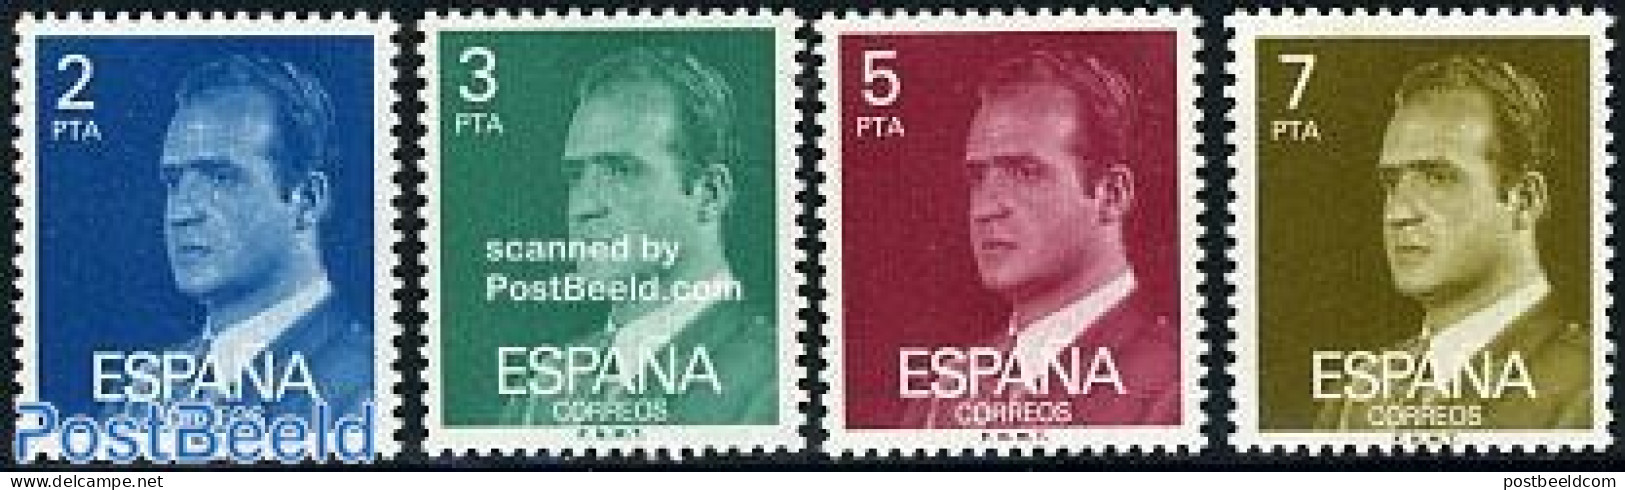 Spain 1976 Definitives, Phosphor 4v, Mint NH - Unused Stamps